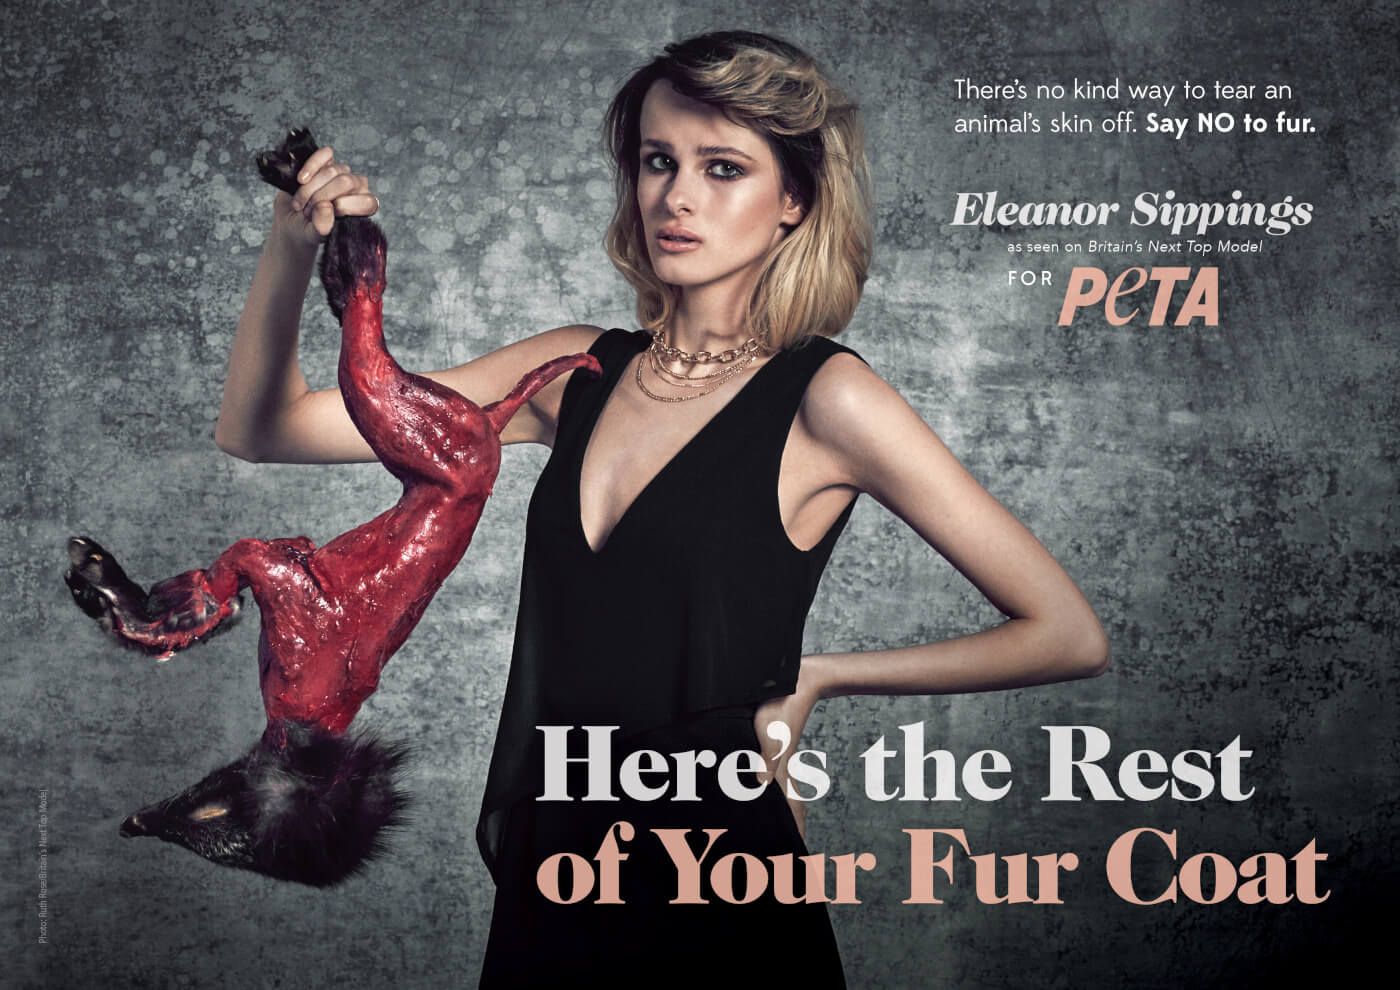  PETA Fur Coat  Campaign Mind Over Media